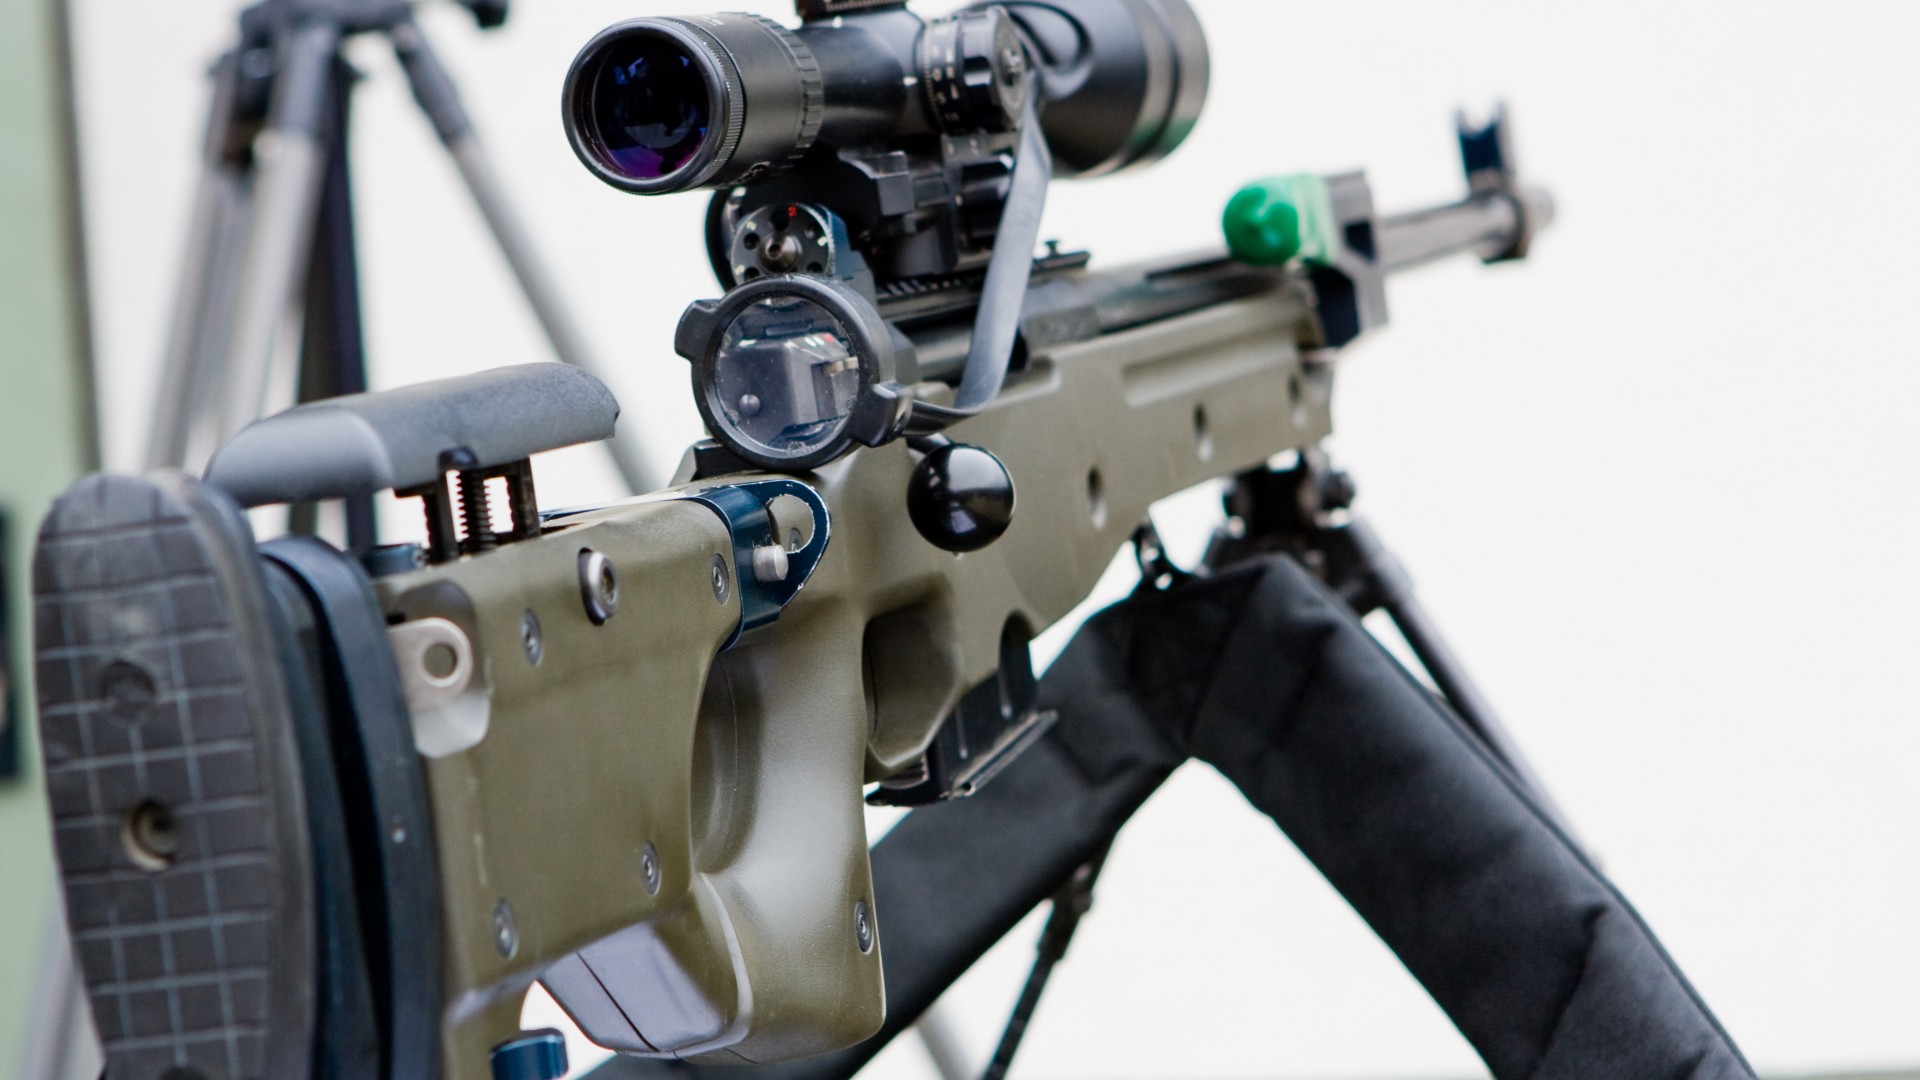 снайперская винтовка, Англия, оптика, Accuracy International, Arctic Warfare, L118A1, SR-98, sniper rifle, scope, .308, 7.62x51mm NATO (horizontal)